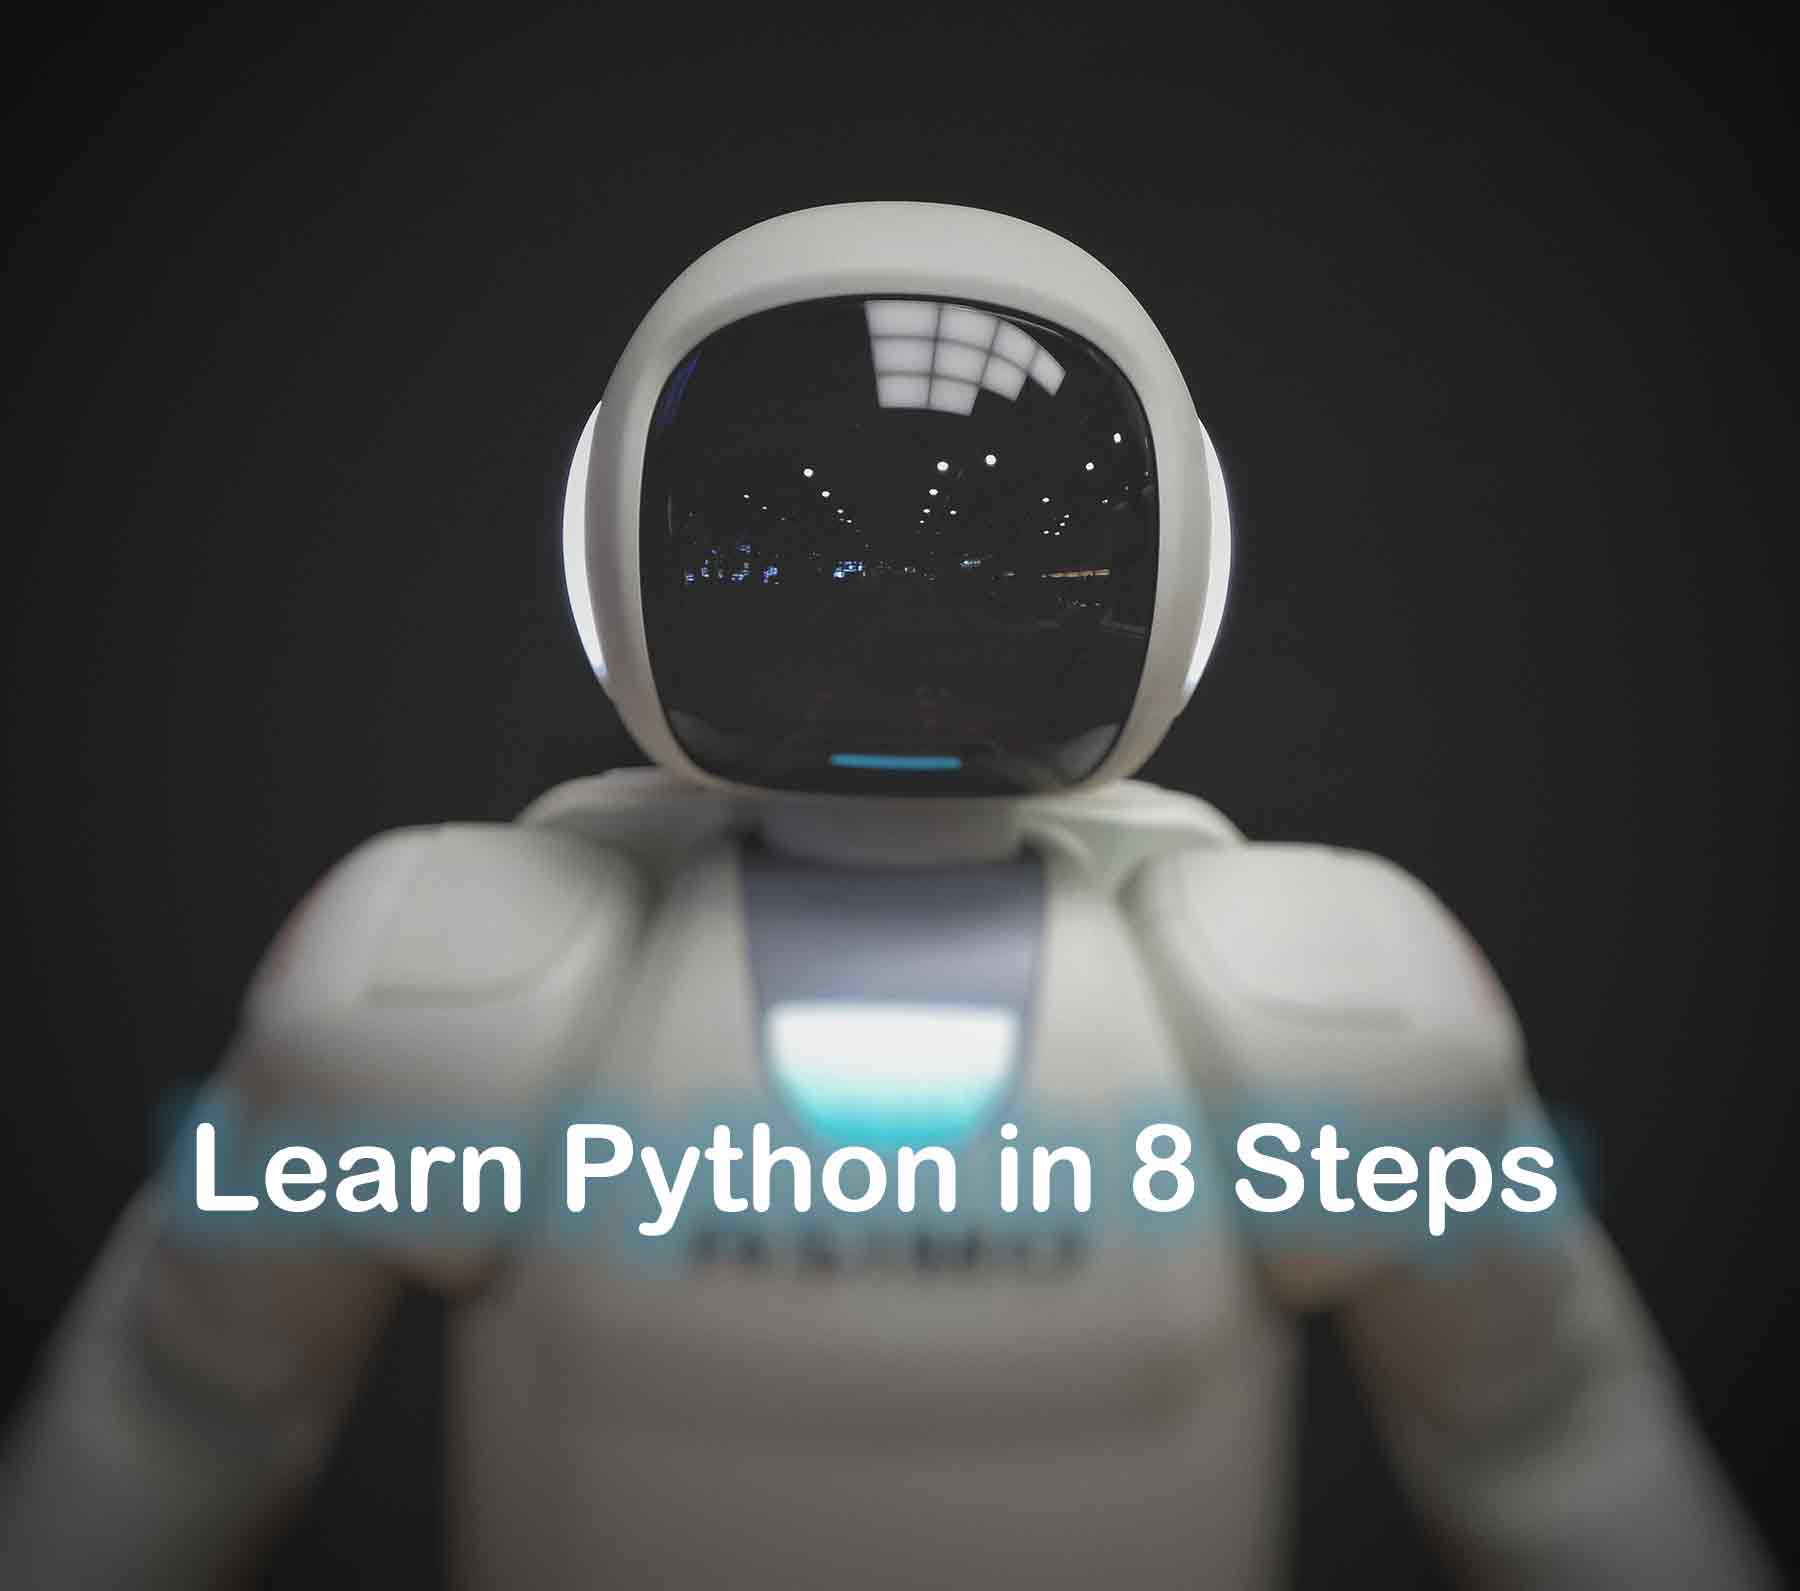 少儿编程之学习方法介绍：Python 最佳学习方法 通过八个步骤学习 Python 编程